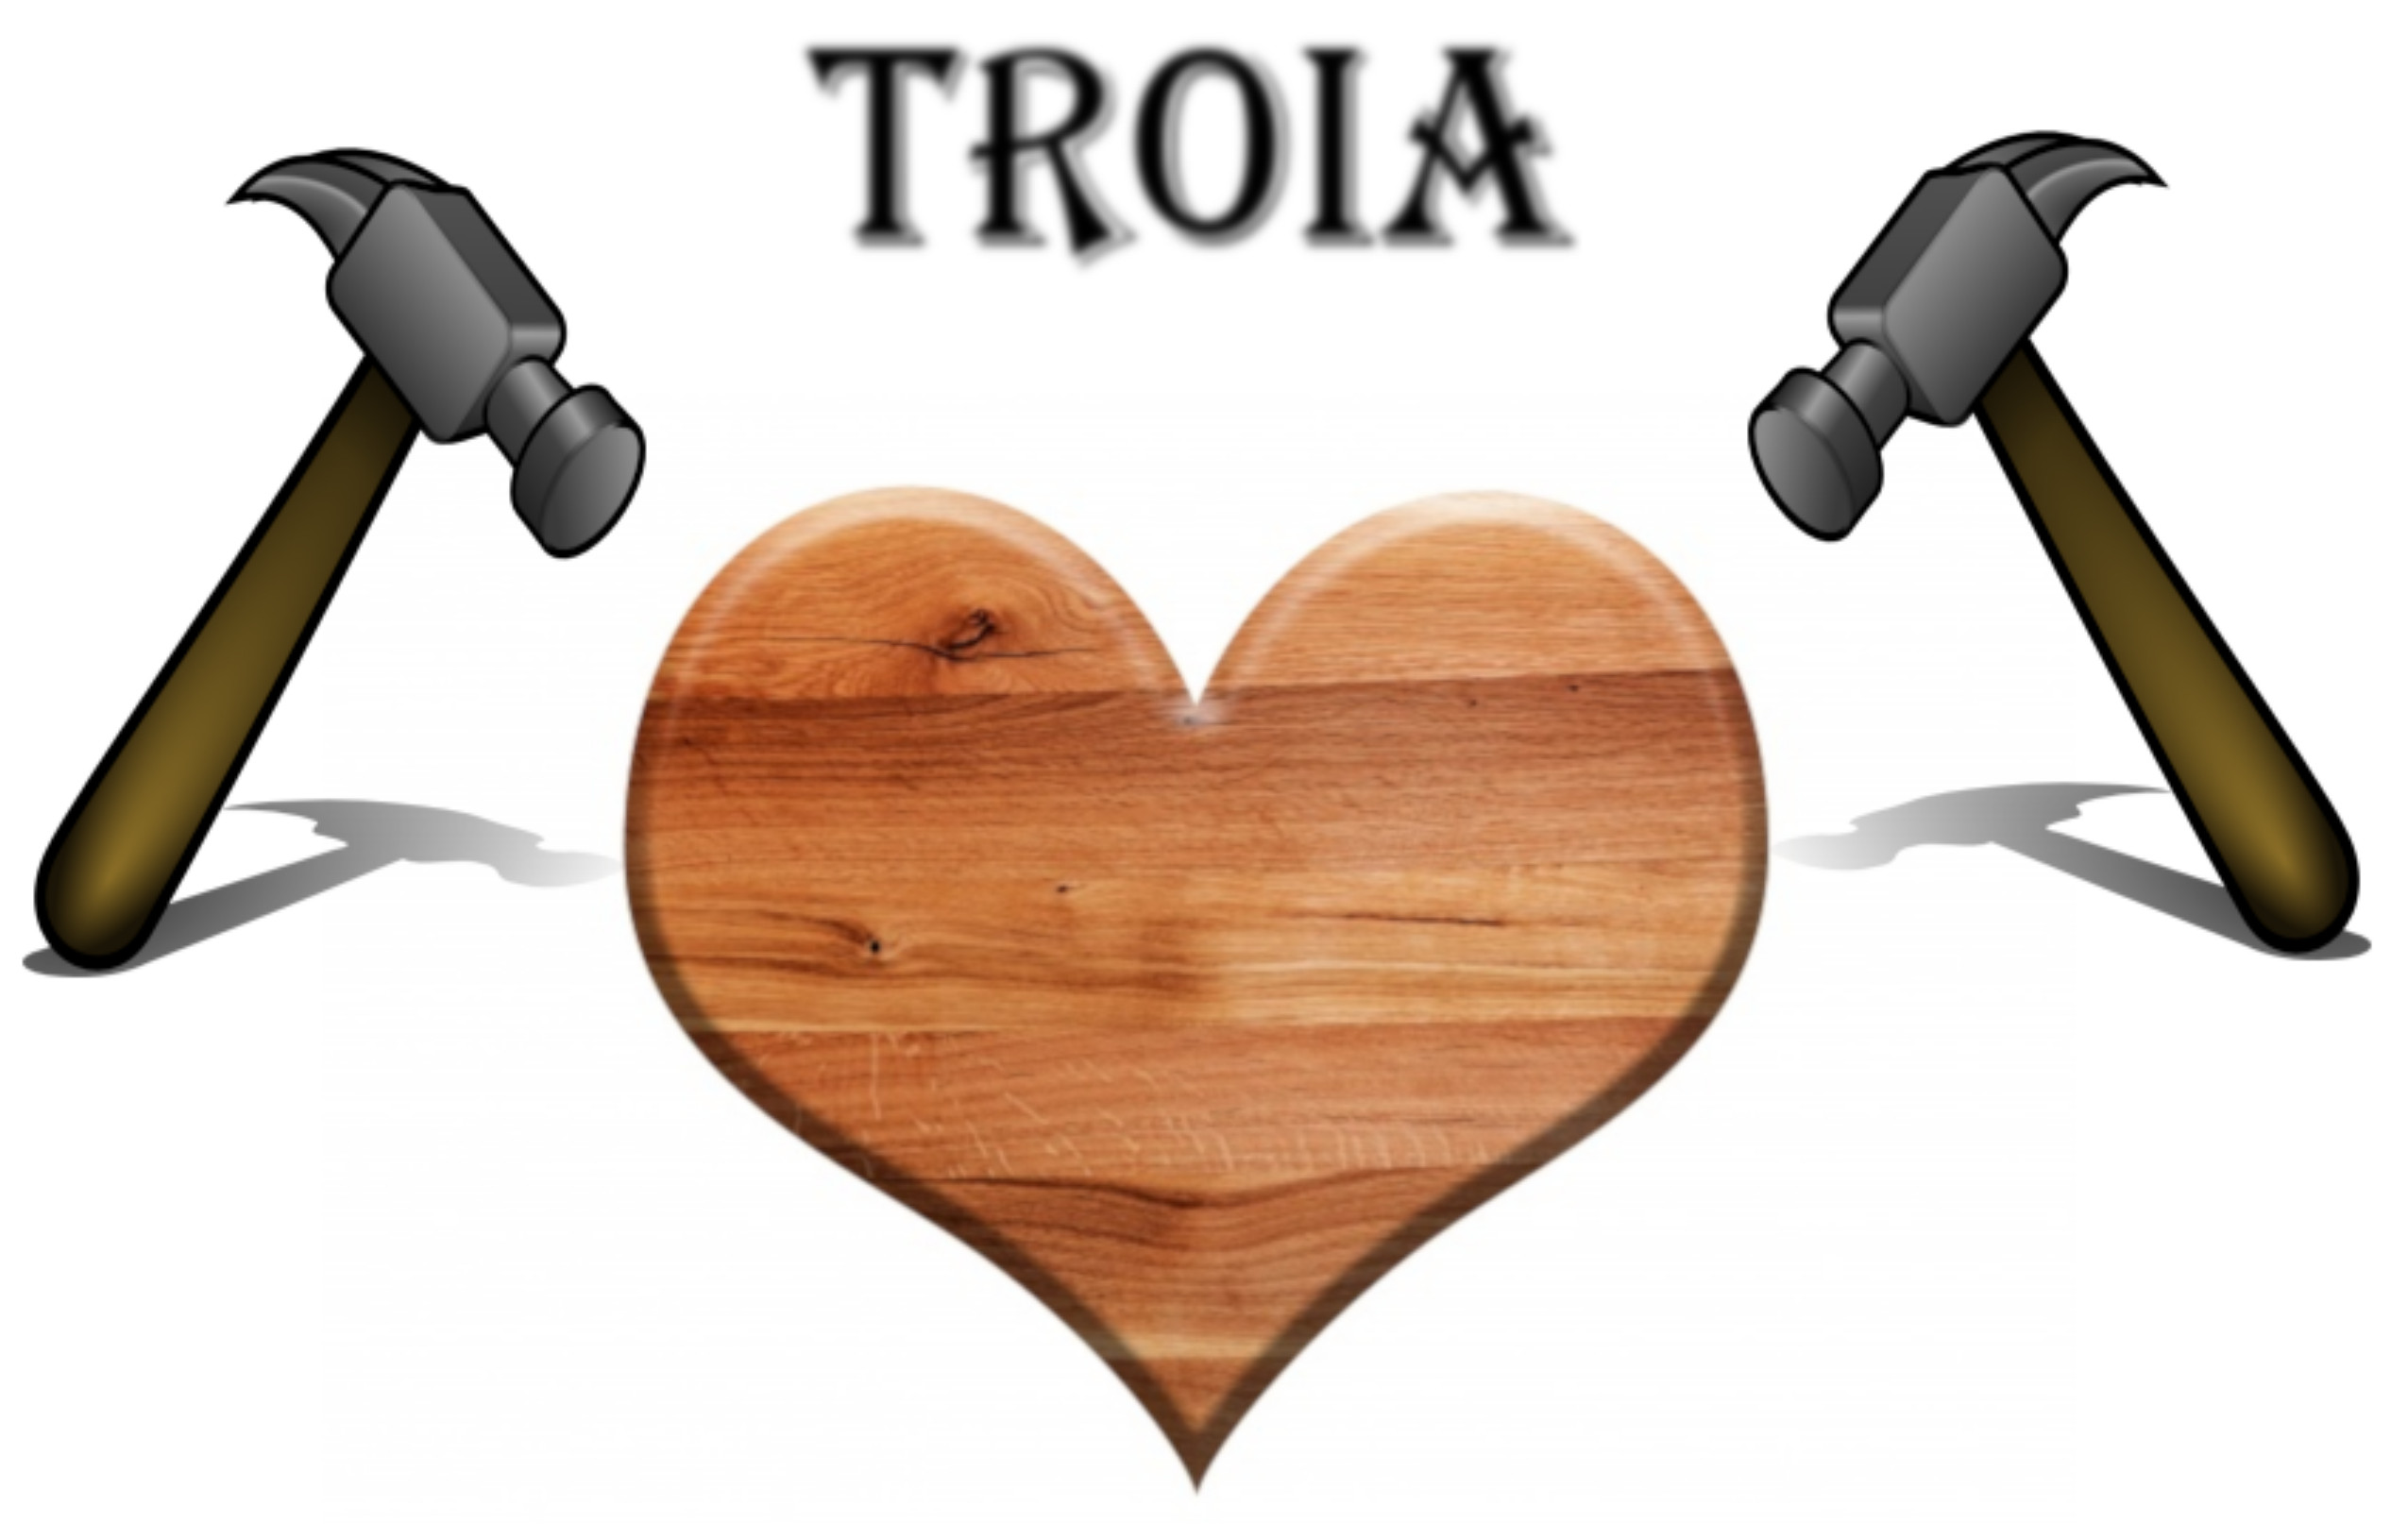 1819a-troia-logo.jpg